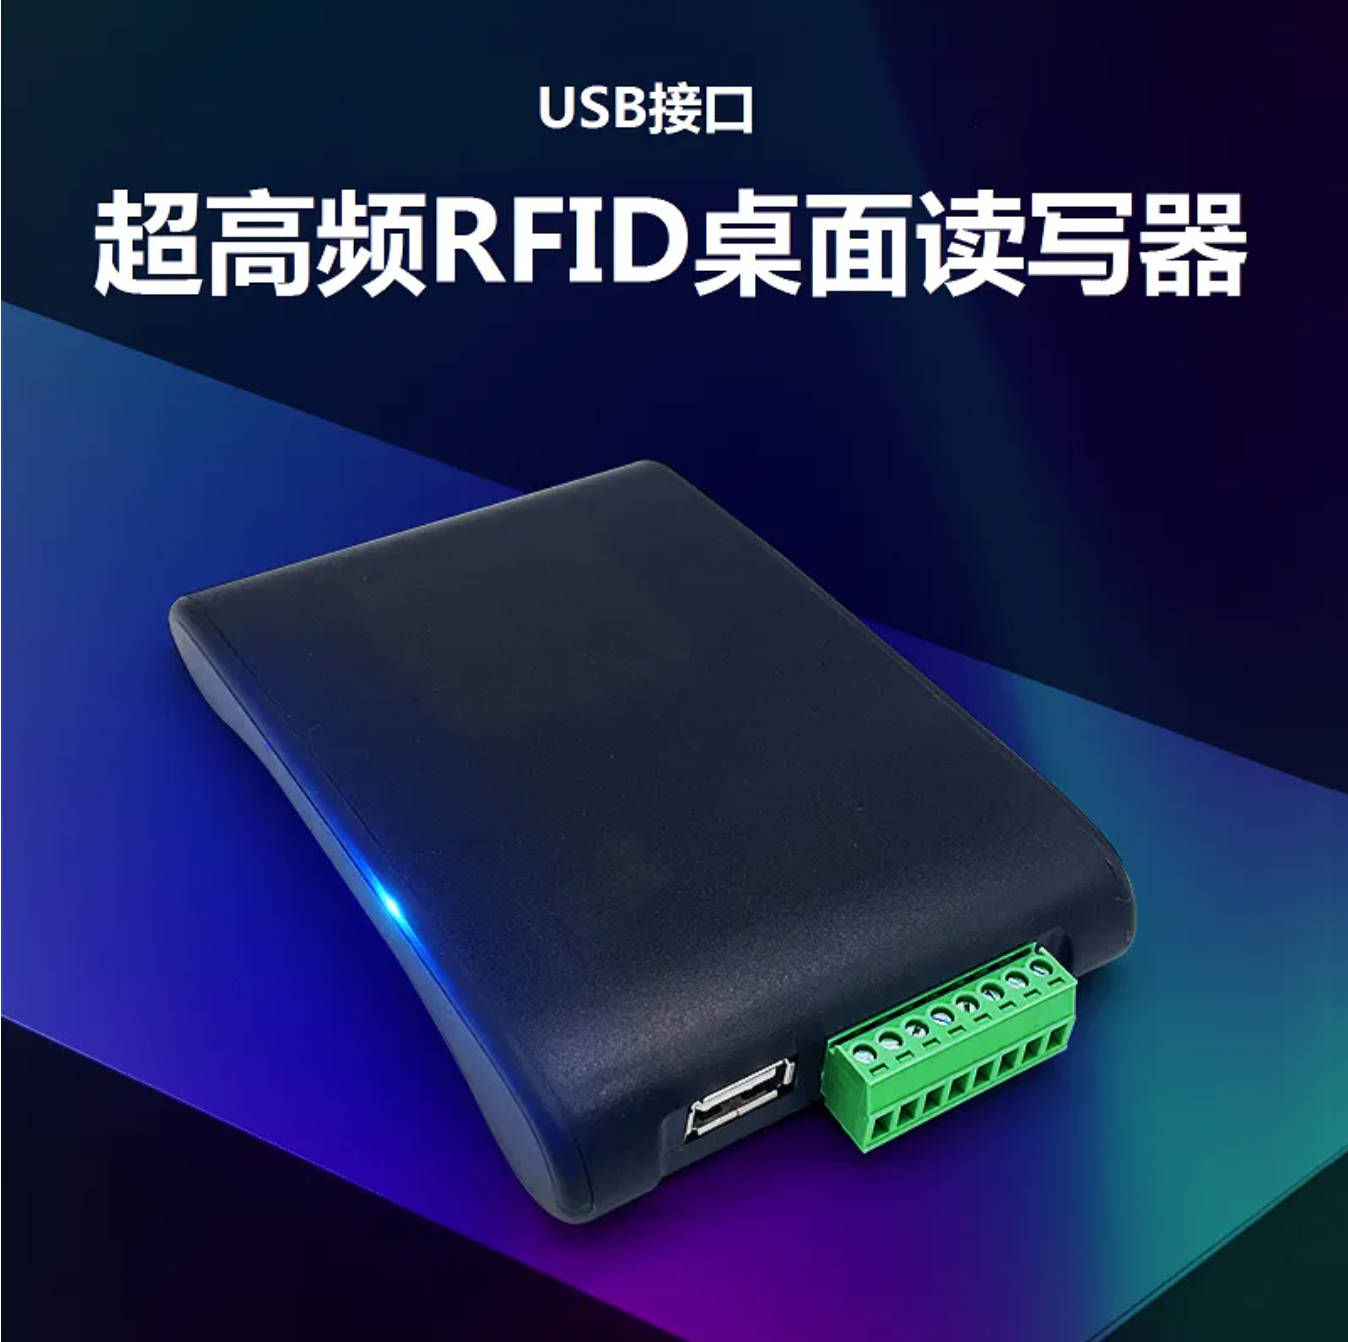 物品盘点超高频rfid读写器UHF桌面型电子标签读卡器USB免驱射频识别器ZY-9816DK图片